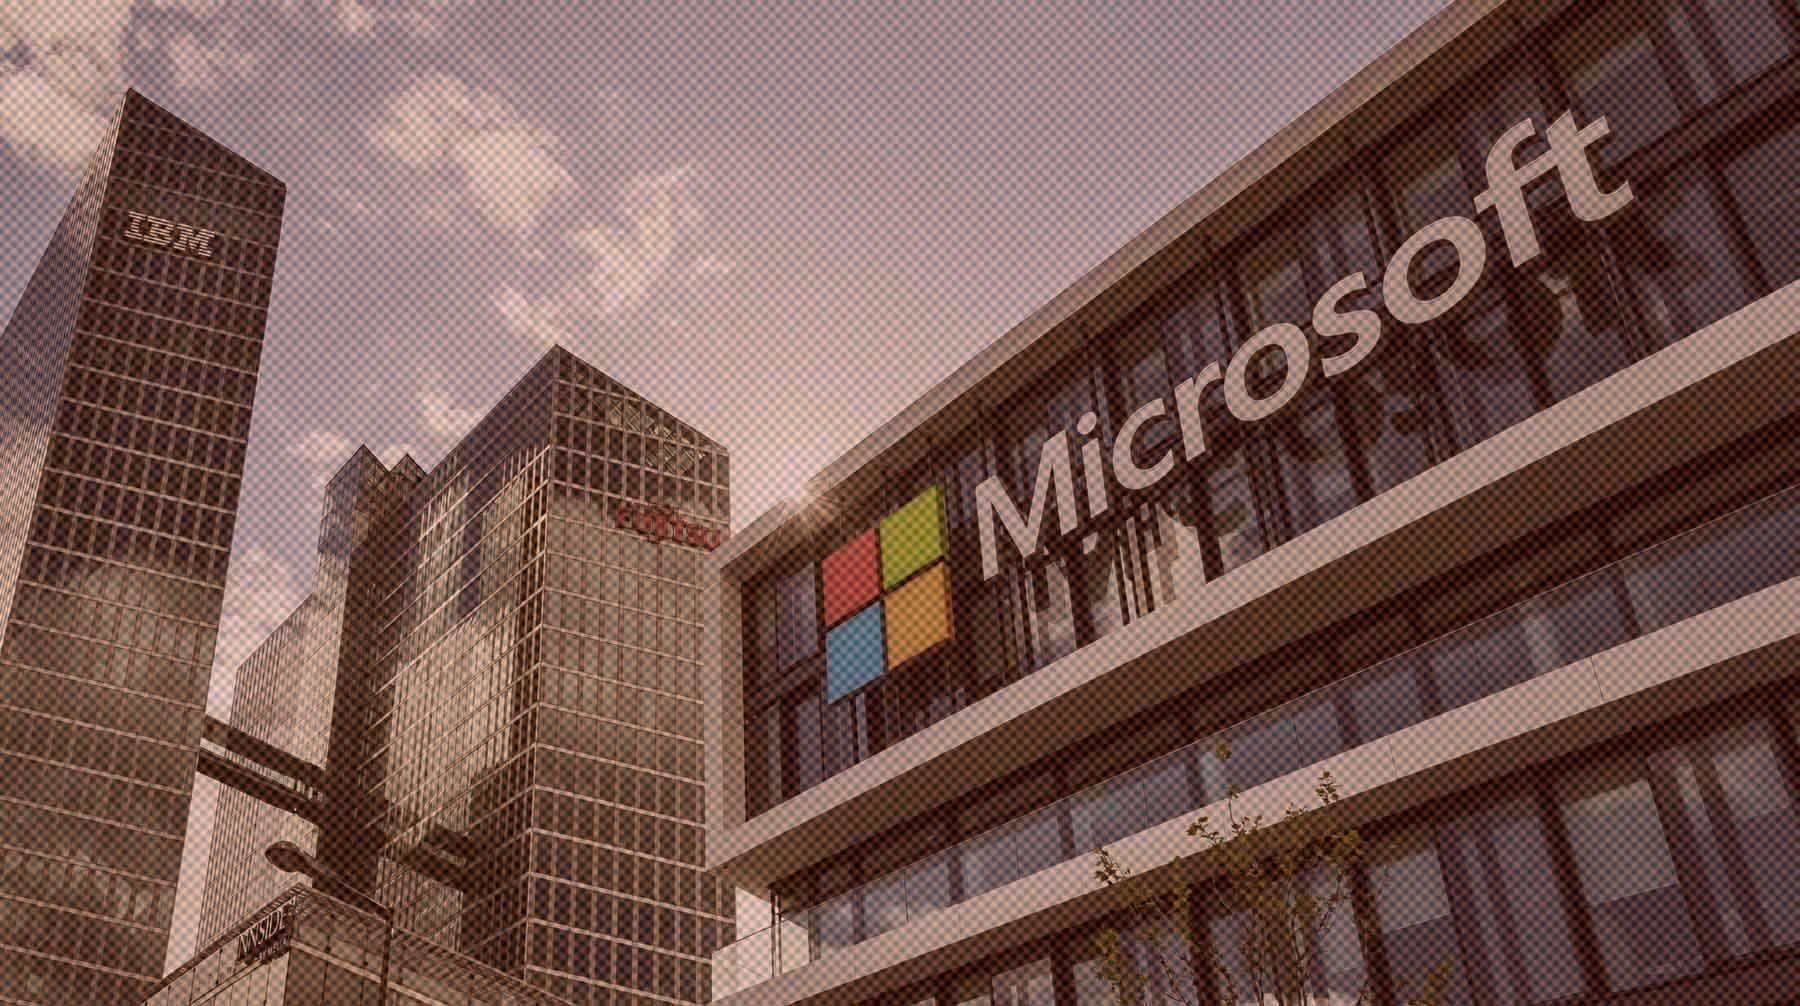 Dailystorm - Microsoft спустя полгода снова разрешила россиянам скачивать Windows